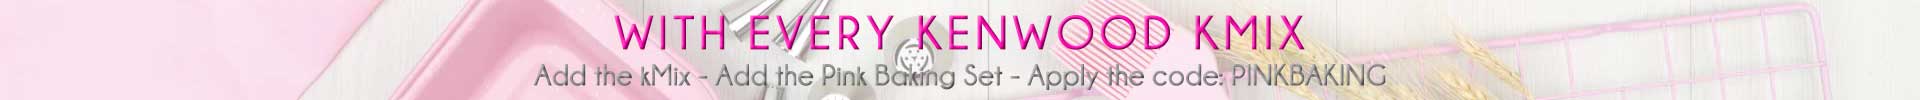 Pink Baking Set kMix Banner